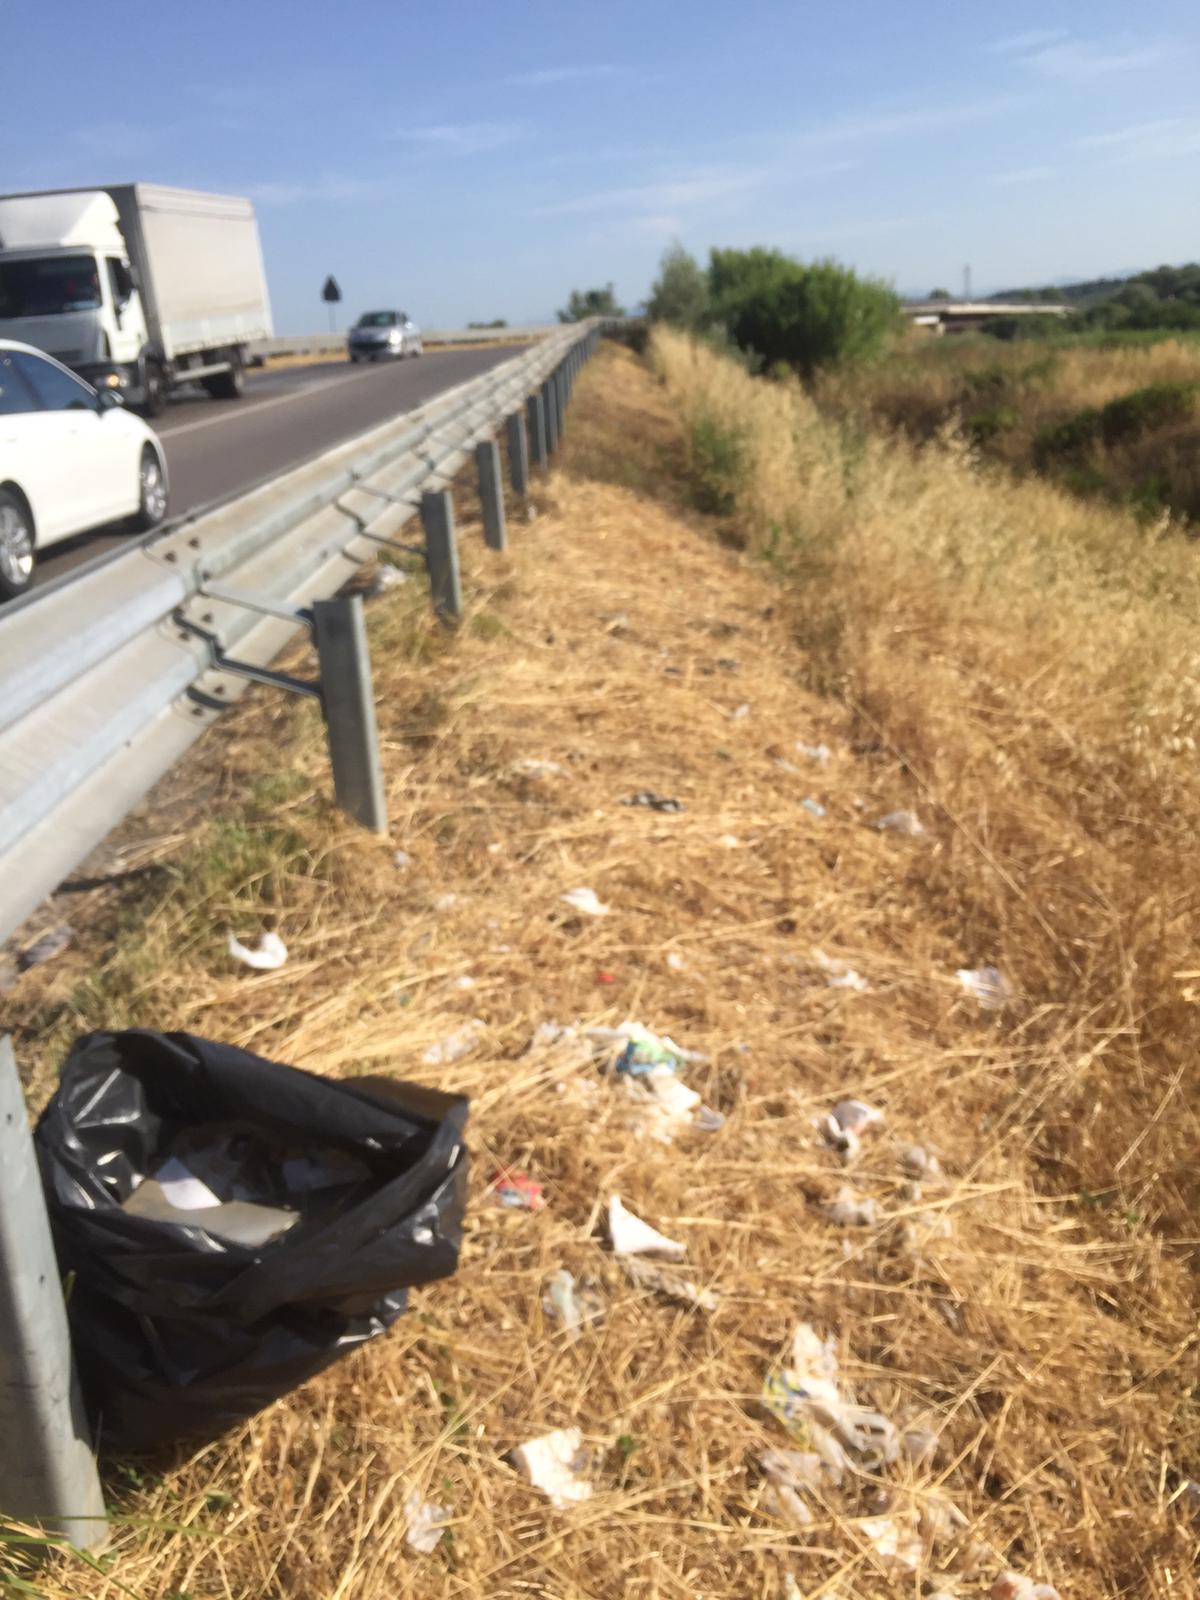 Banchine stradali, 440 kg di spazzatura rimossa in 4 giorni di pulizia lungo le provinciali (foto da comunicato)